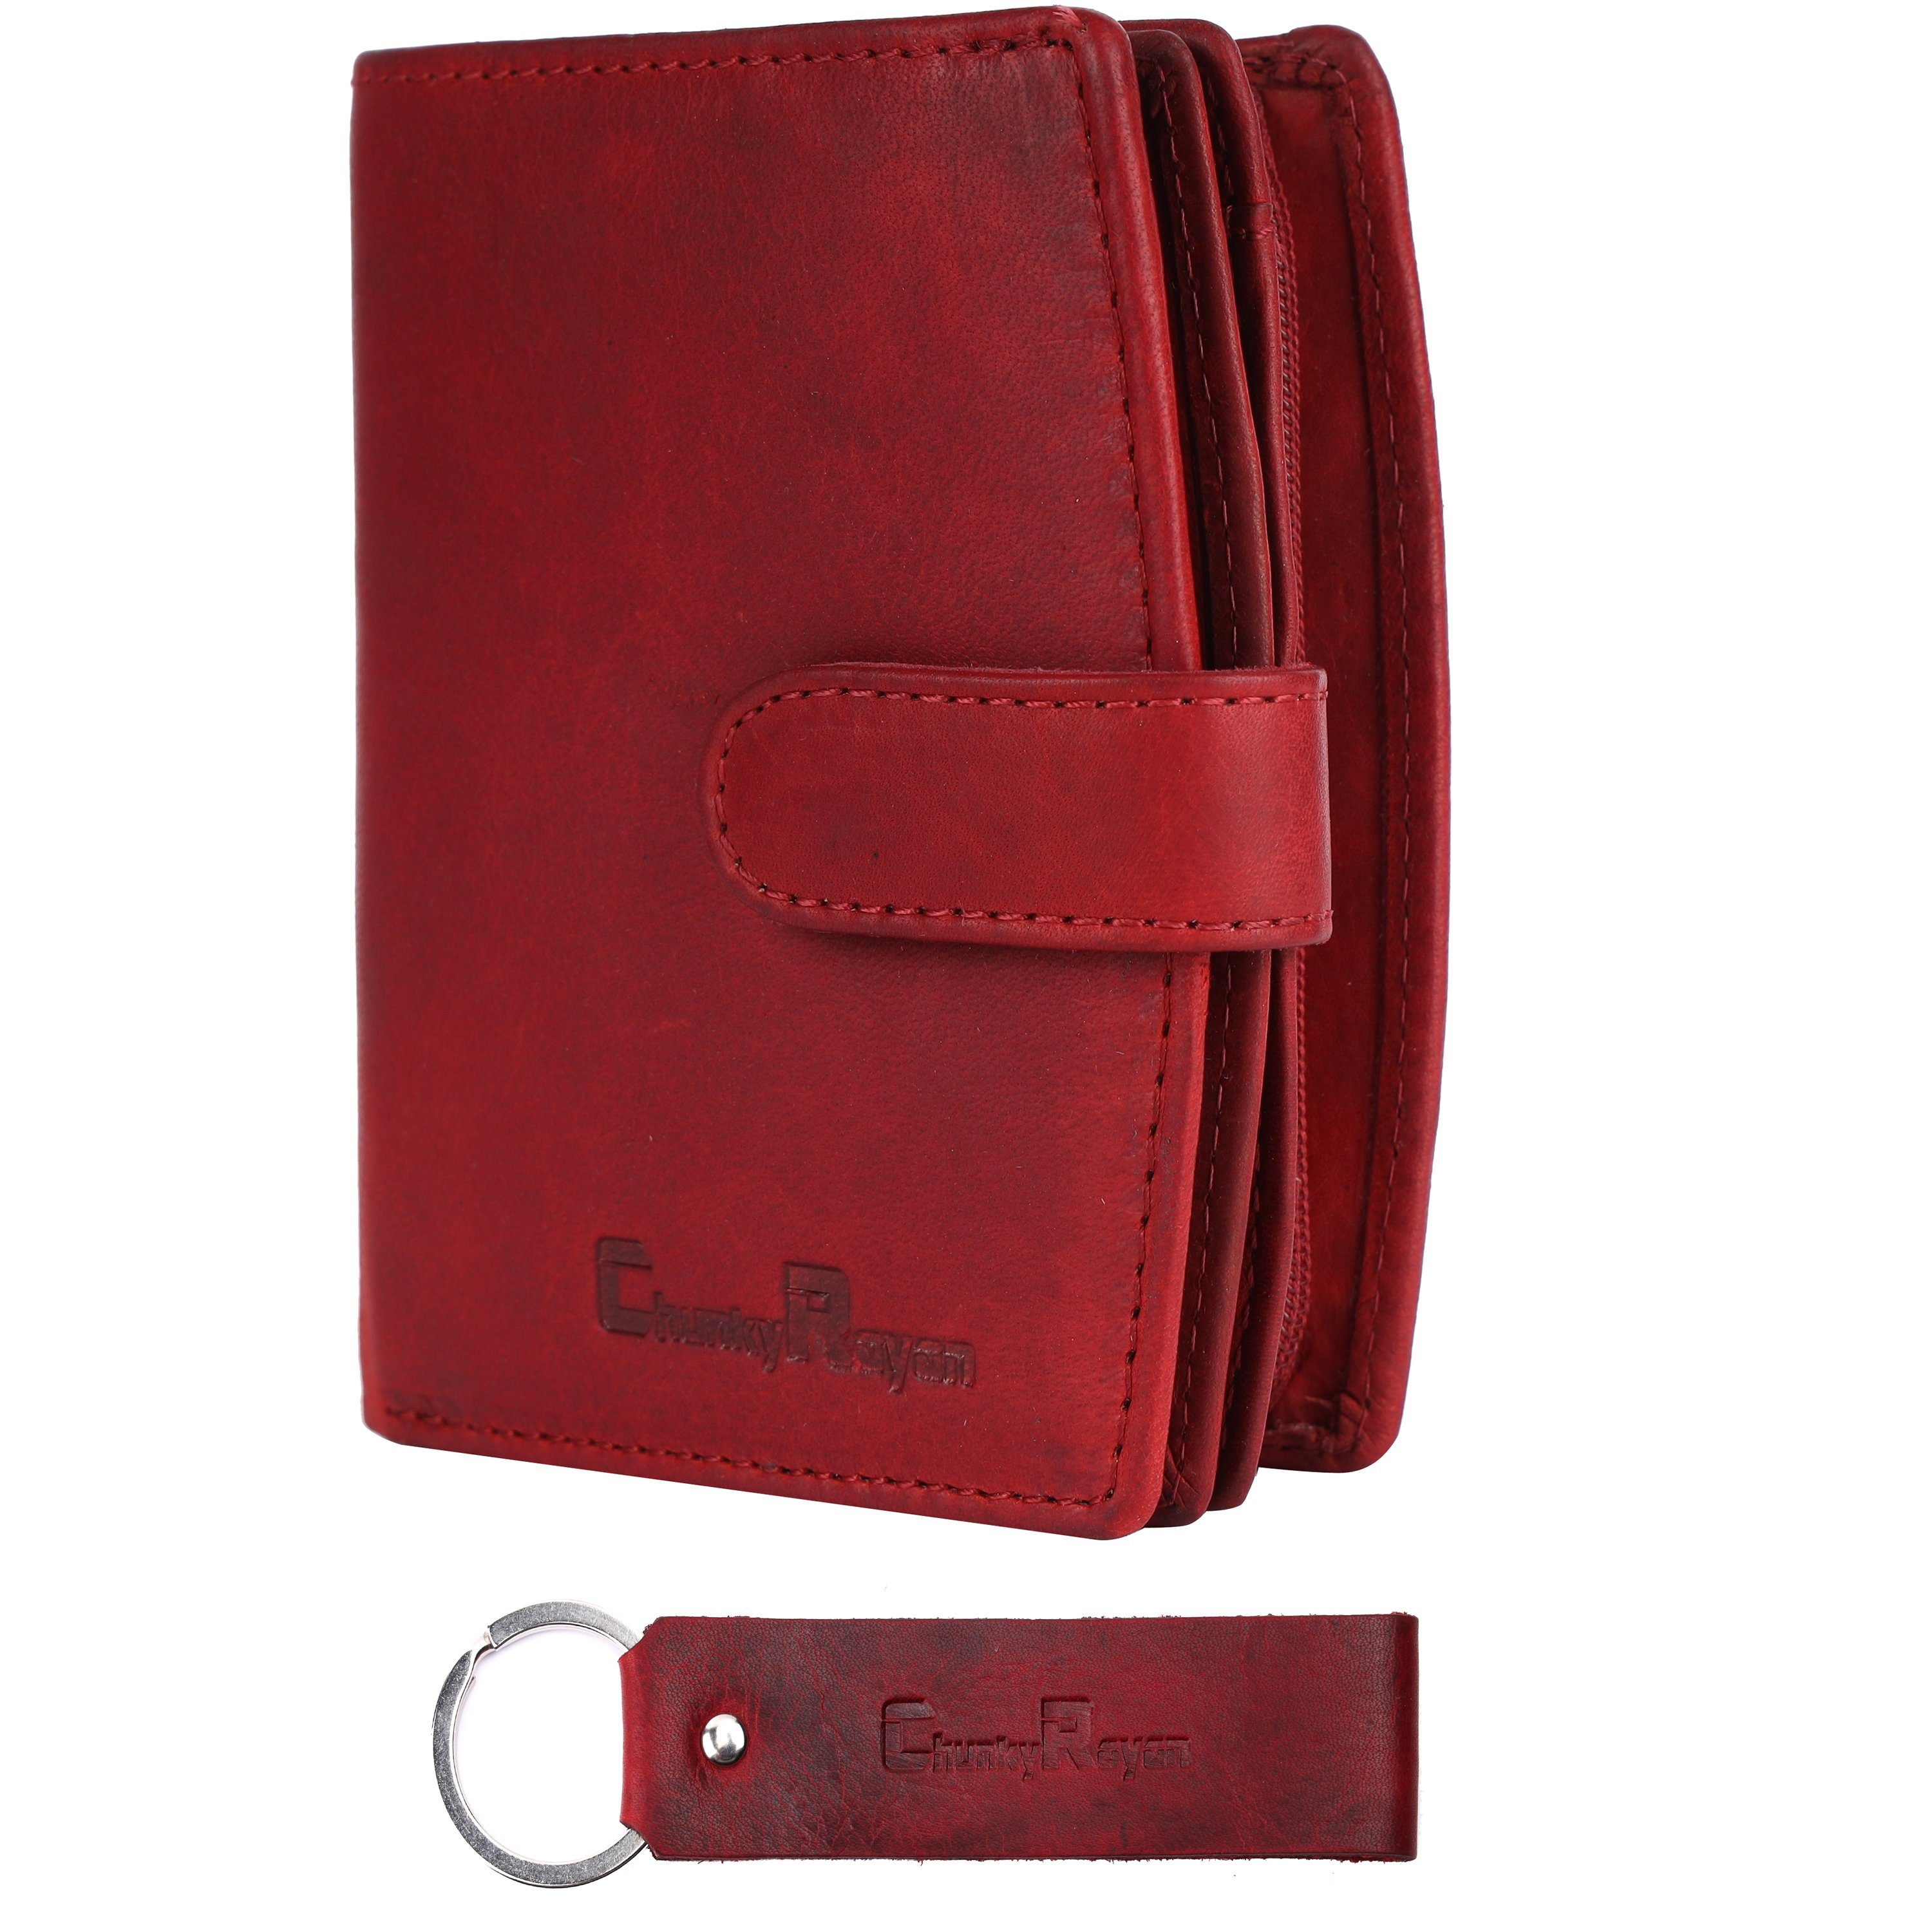 Geldbörse Echtleder Chunkyrayan Schutz Damen RFID Hochwertig Red Vintage Chunkyrayan Geldbörse